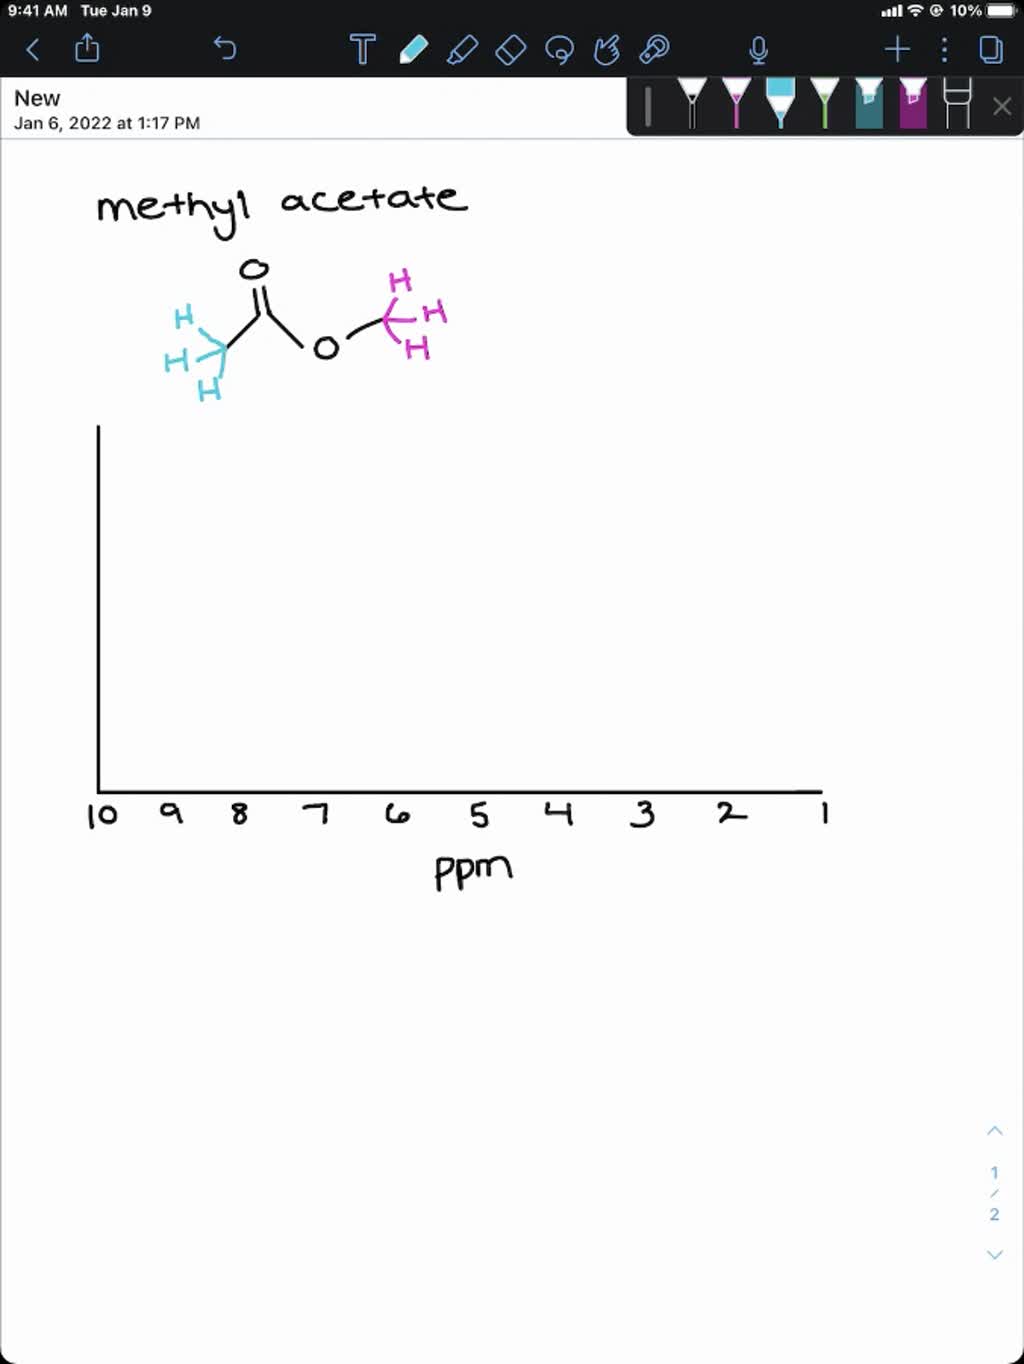 methyl acetate nmr